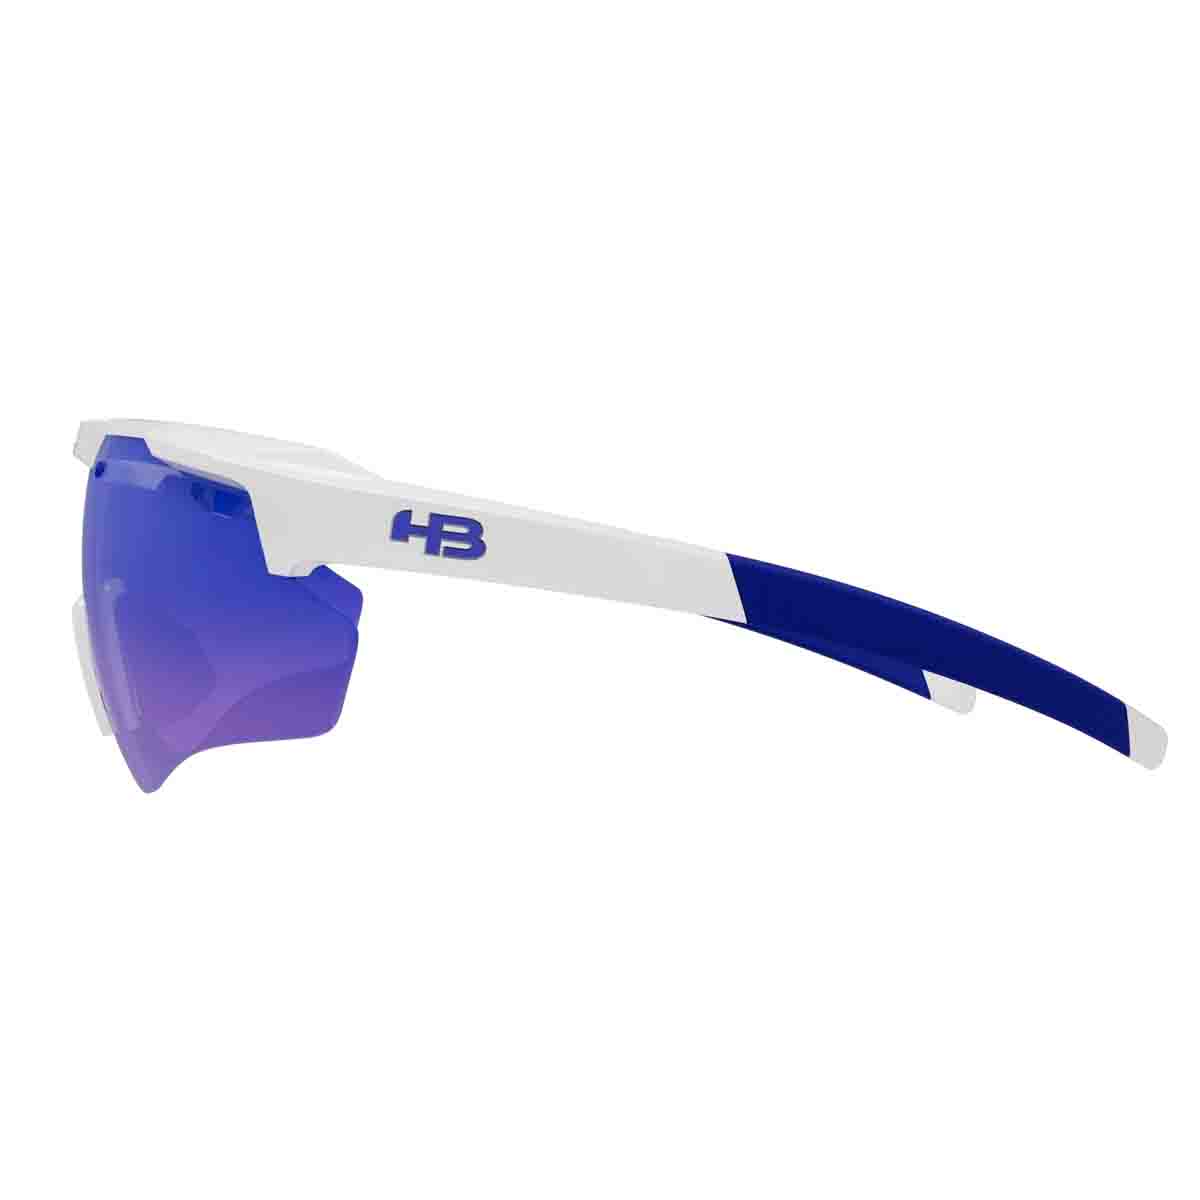 Oculos Para Ciclismo HB Shield Evo 2.0 Branco Pearled White Lente Azul Chrome Espelhada